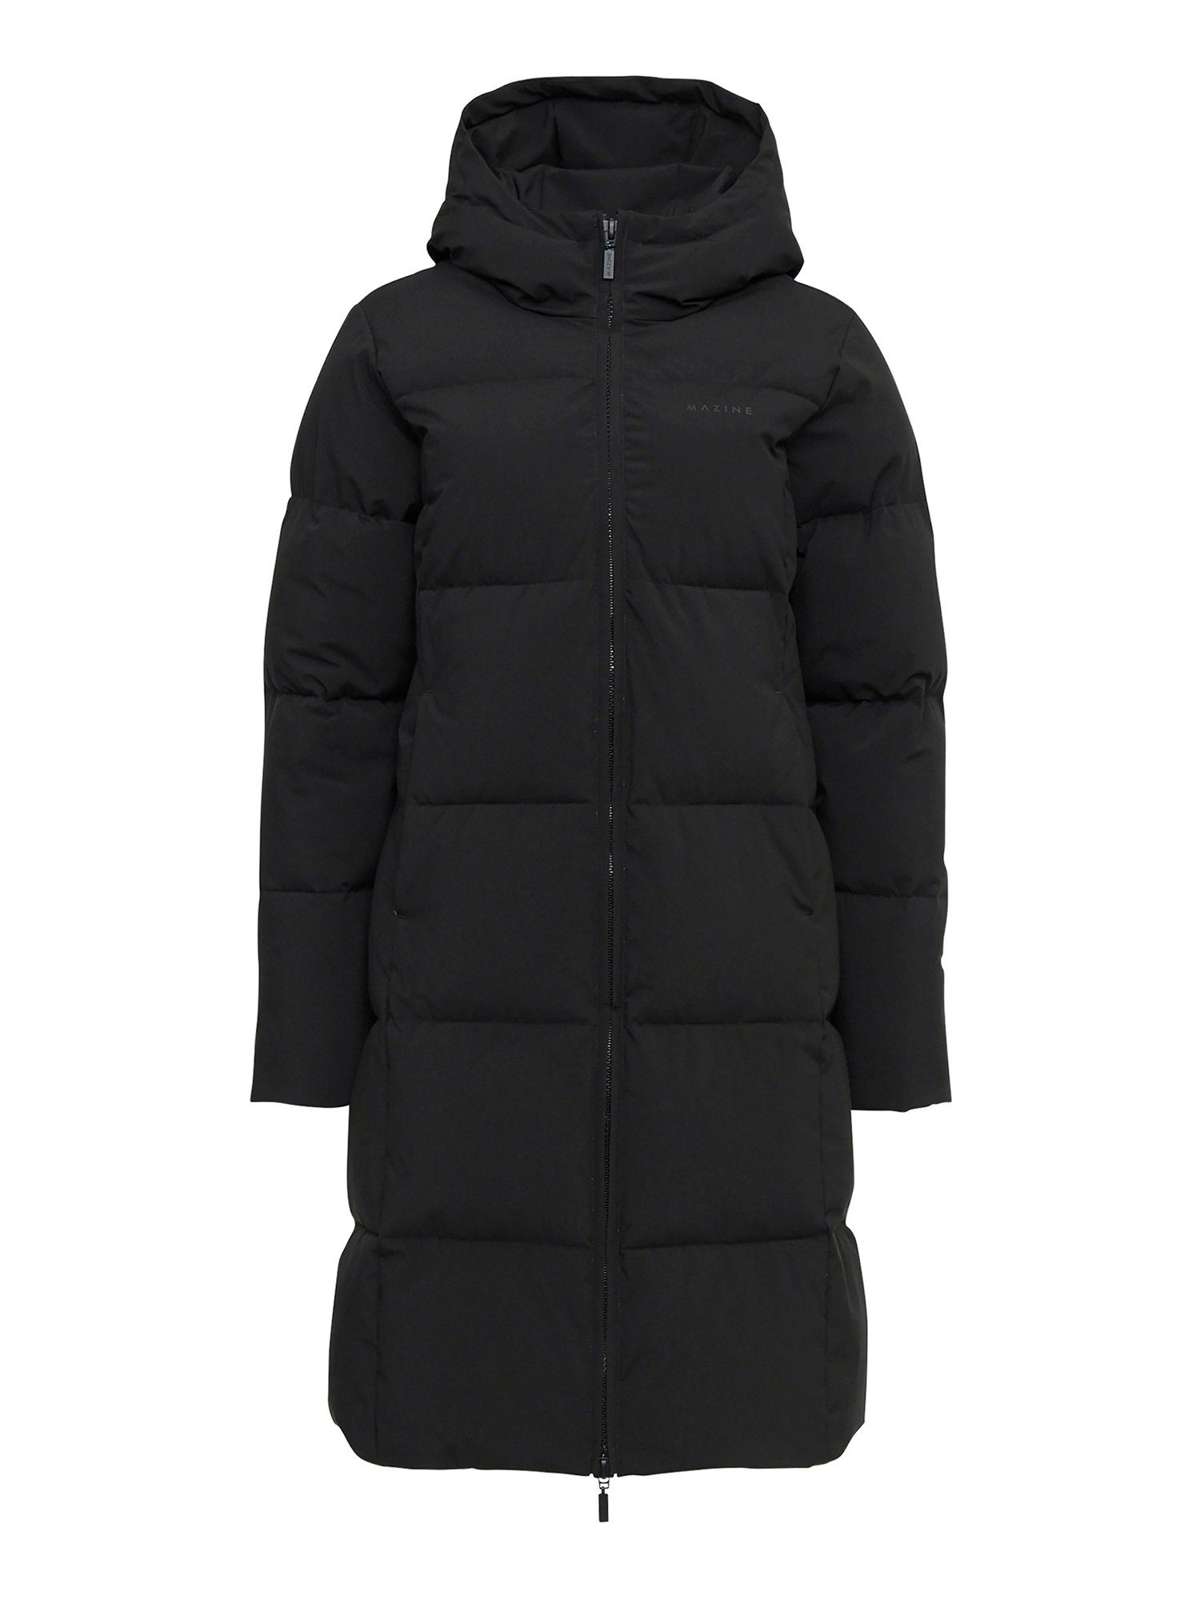 Длинное пальто Elmira Puffer Coat утепляющее